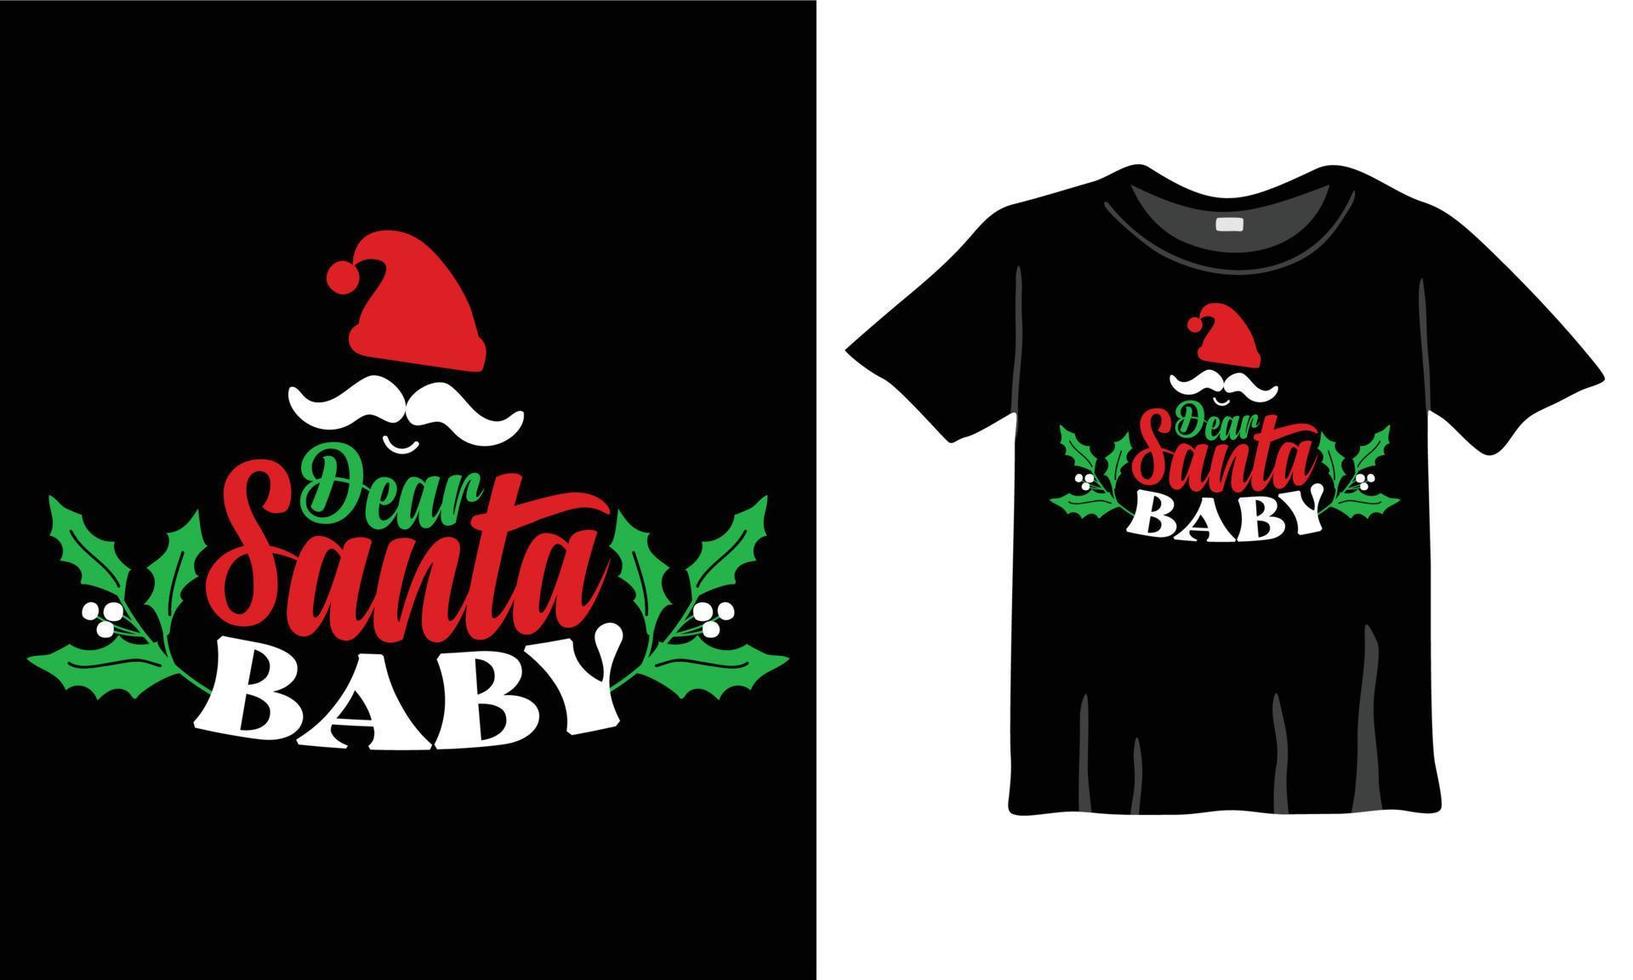 lieber santa baby weihnachtst-shirt entwurfsvorlage für weihnachtsfeier. gut für Grußkarten, T-Shirts, Tassen und Geschenke. für Damen-, Herren- und Babybekleidung vektor